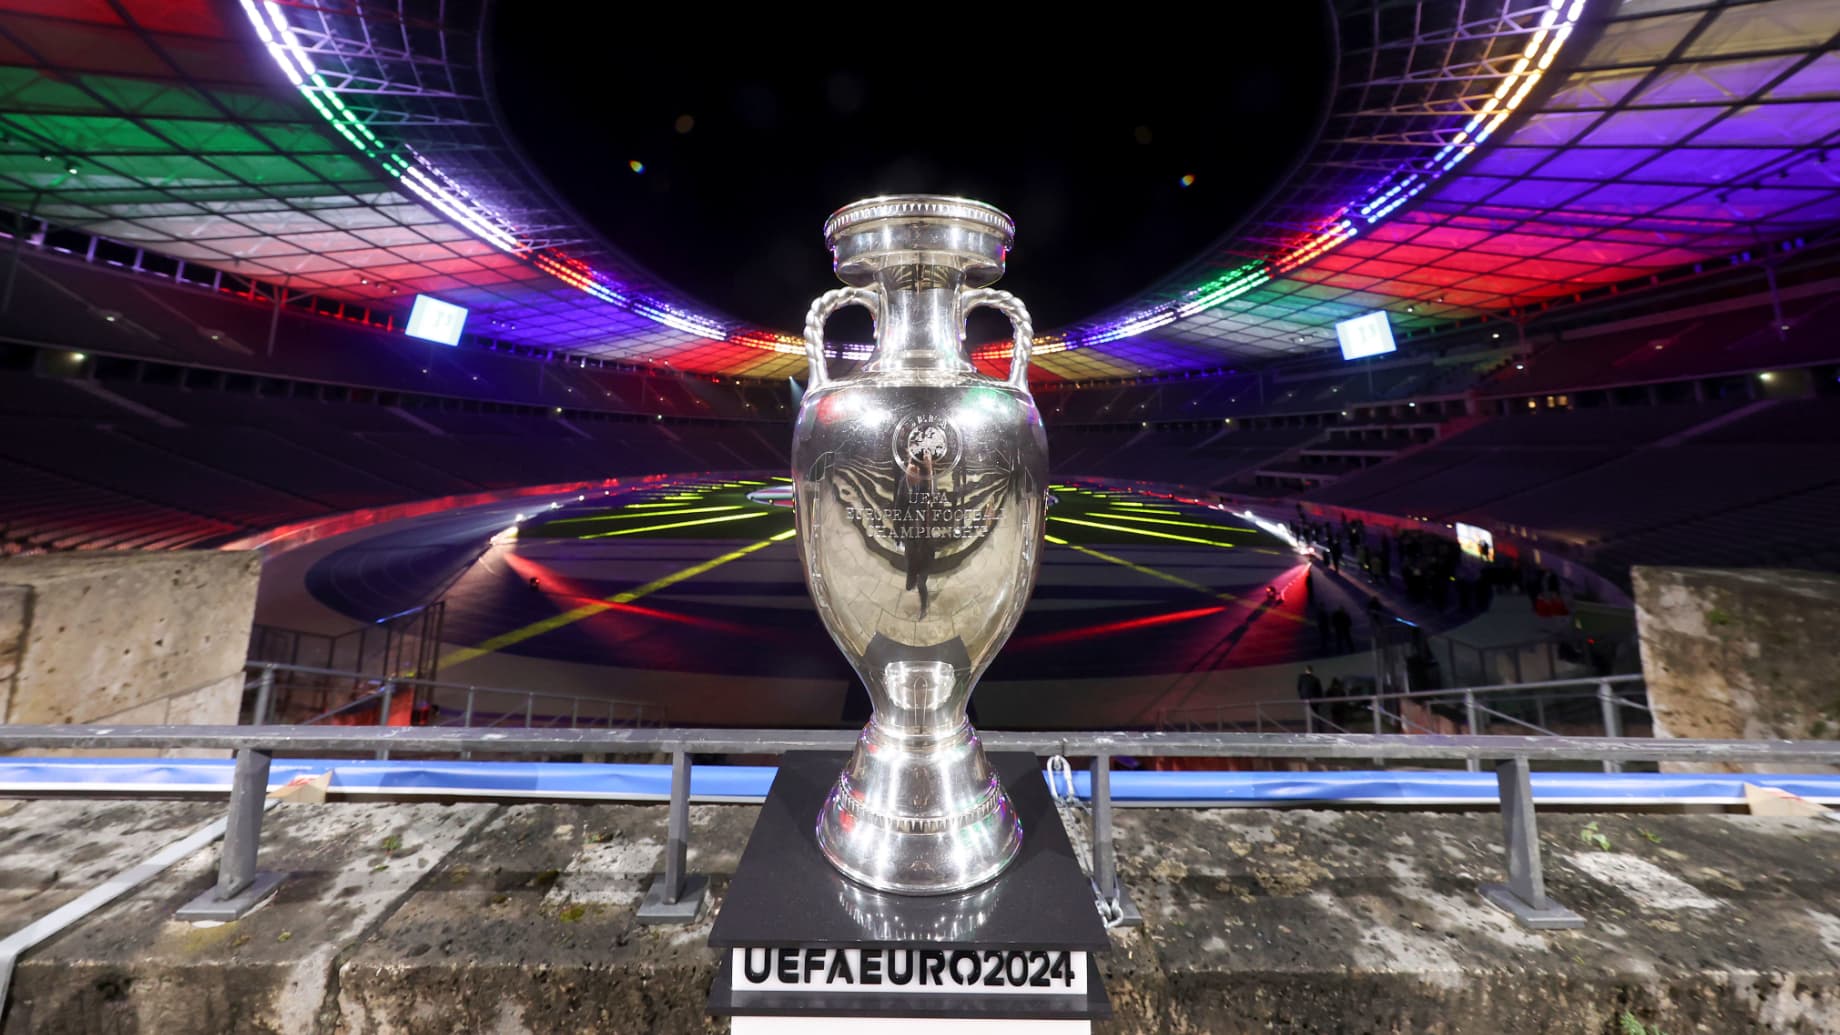 Le tableau final de l'Euro 2024 17 équipes qualifiées, têtes de série